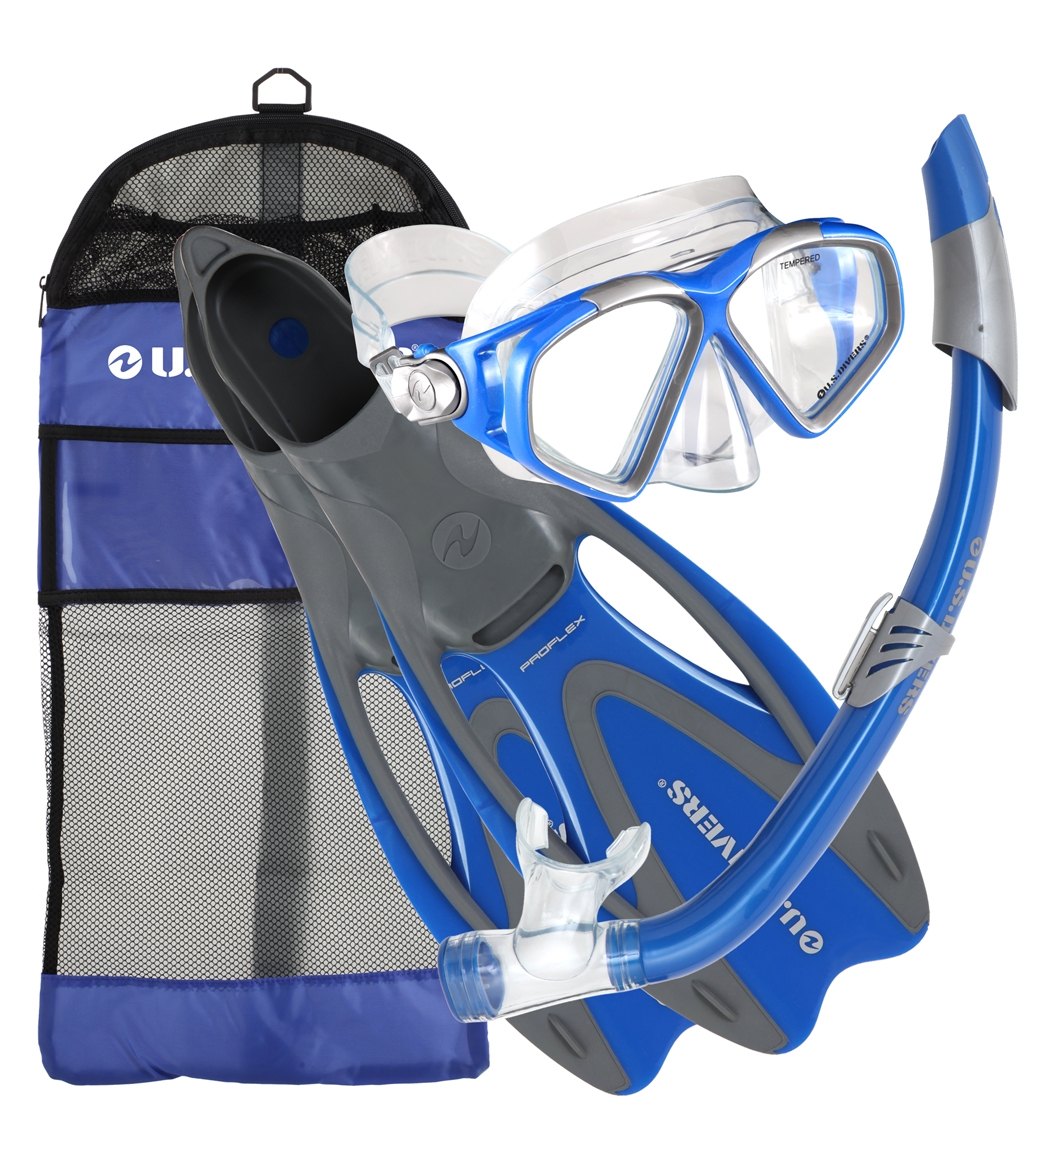 U.s. Divers Cozumel Mask / Seabreeze Snorkel Proflex Fins Gear Bag Set - Blue Medium/Large Plastic/Rubber/Silicone - Swimoutlet.com